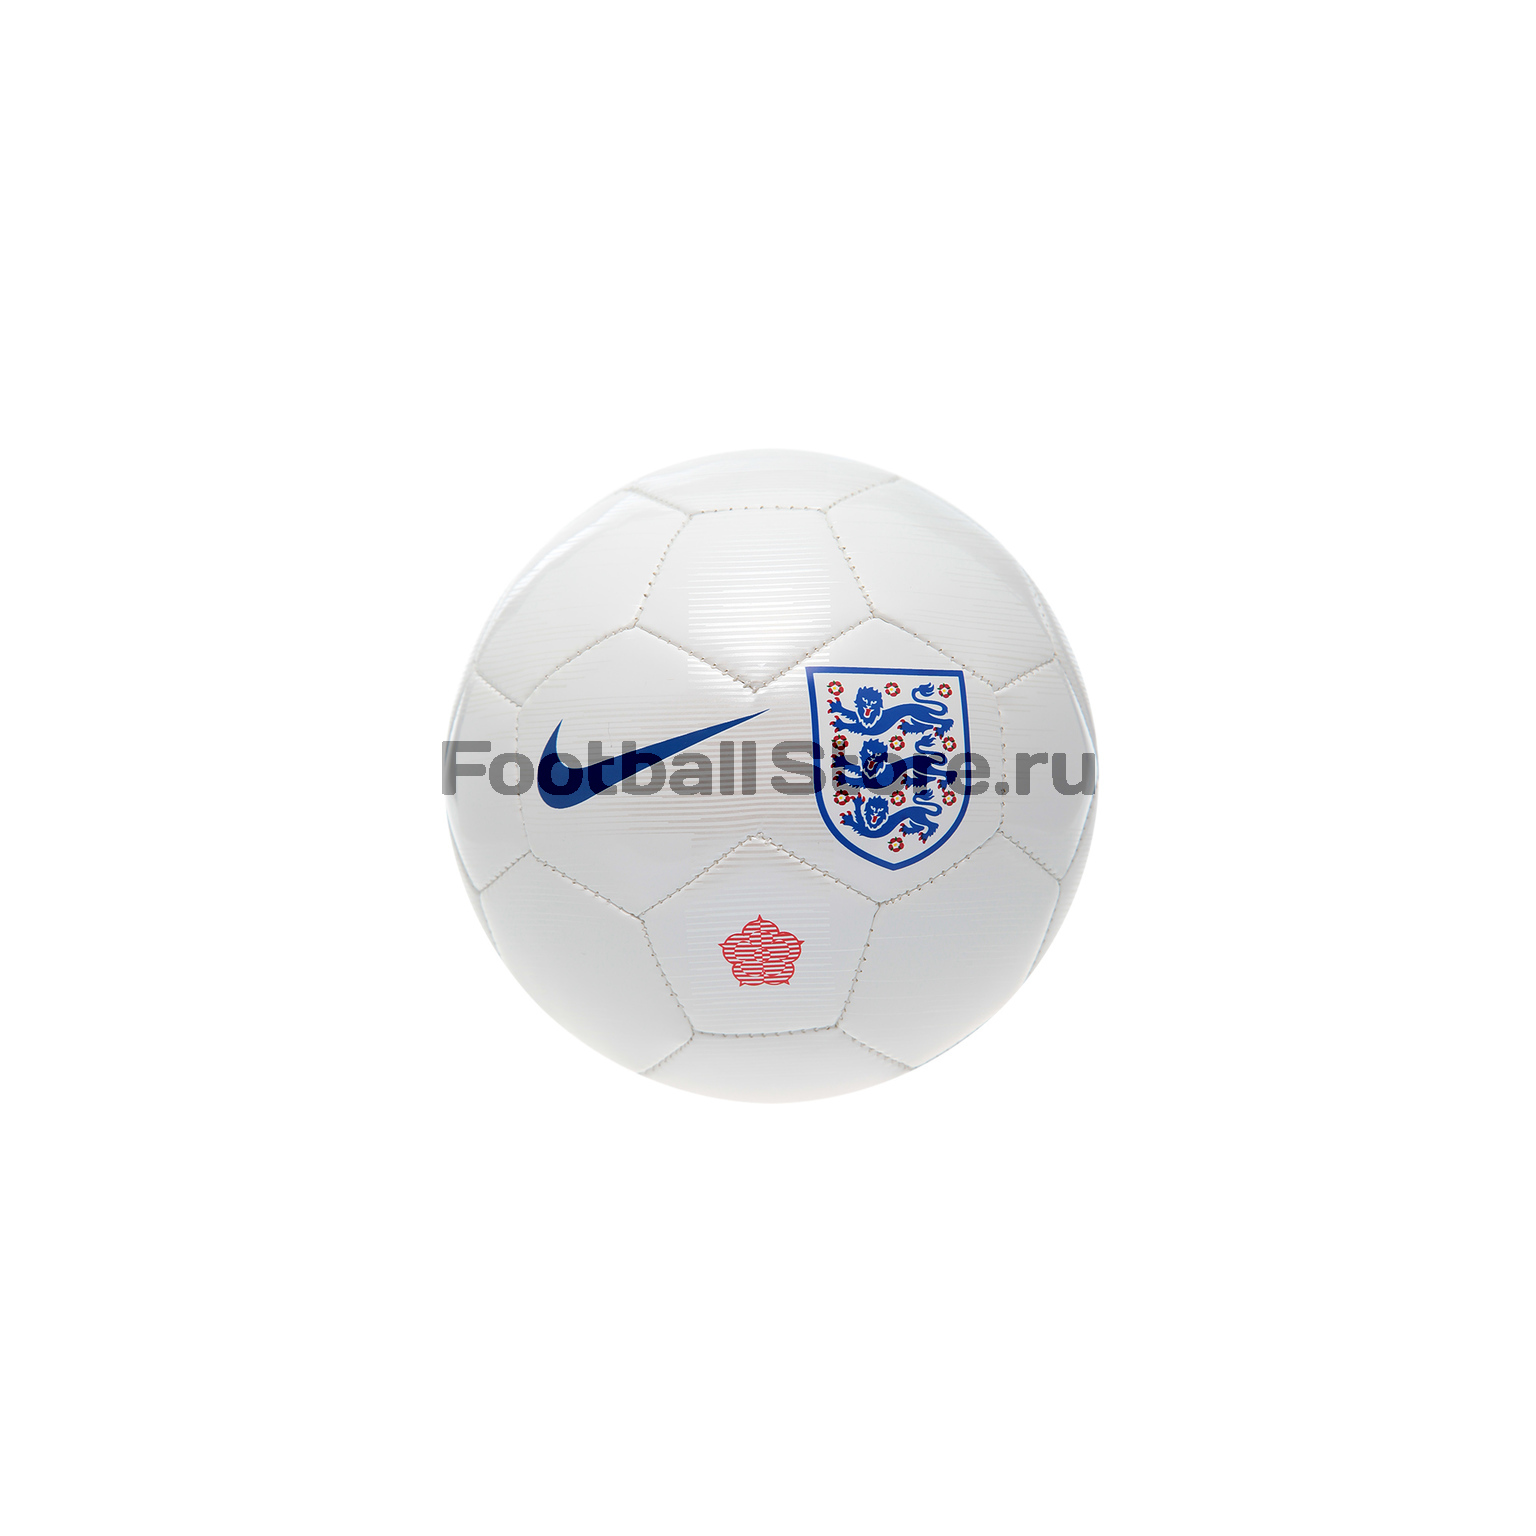 Футбольный сувенирный мяч Nike сб. Англии SC3224-100